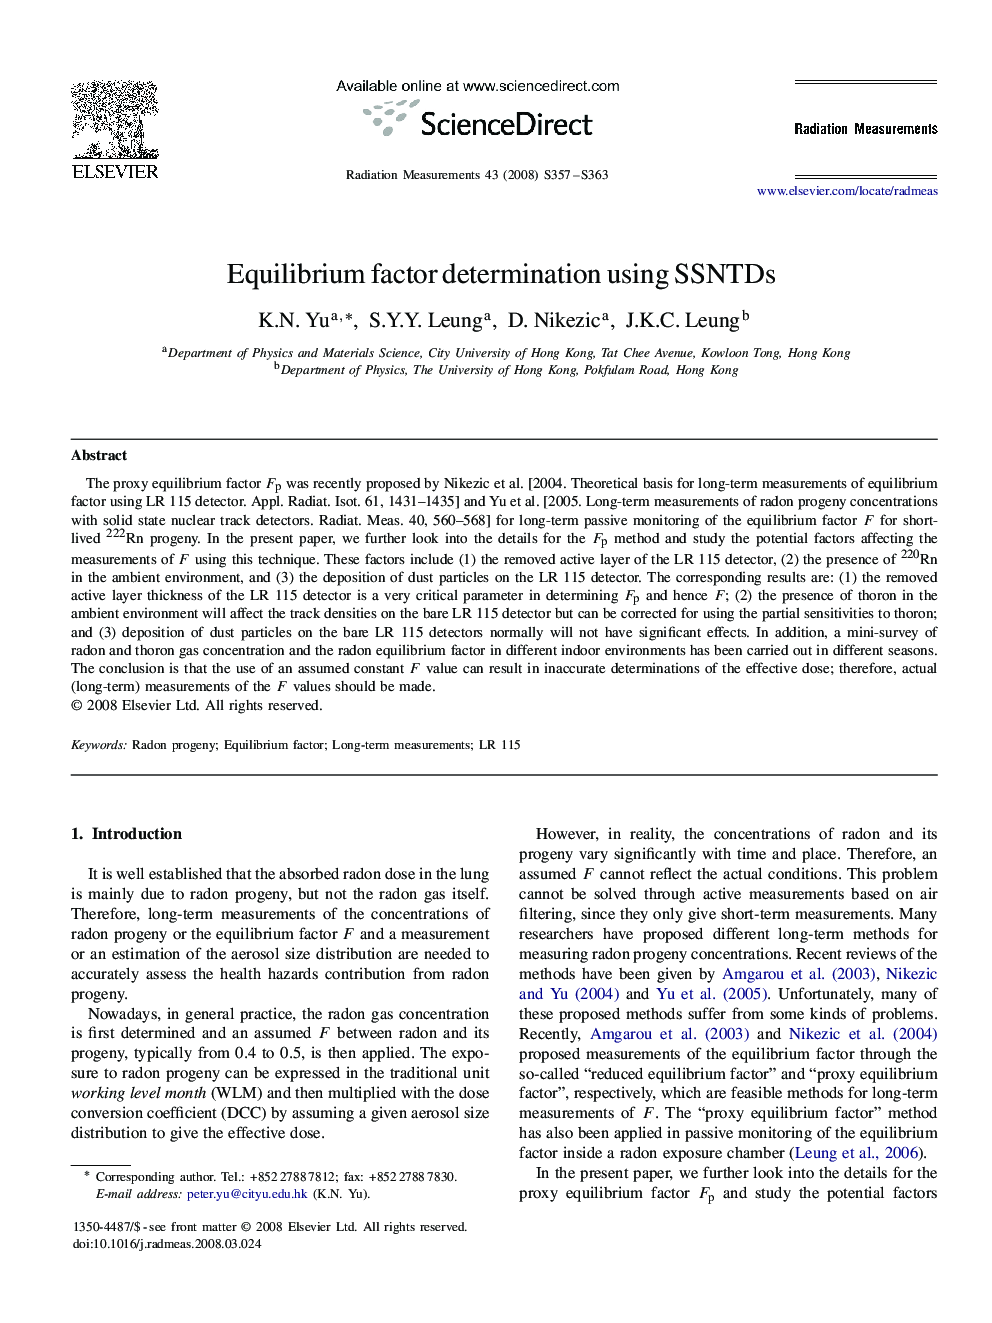 Equilibrium factor determination using SSNTDs